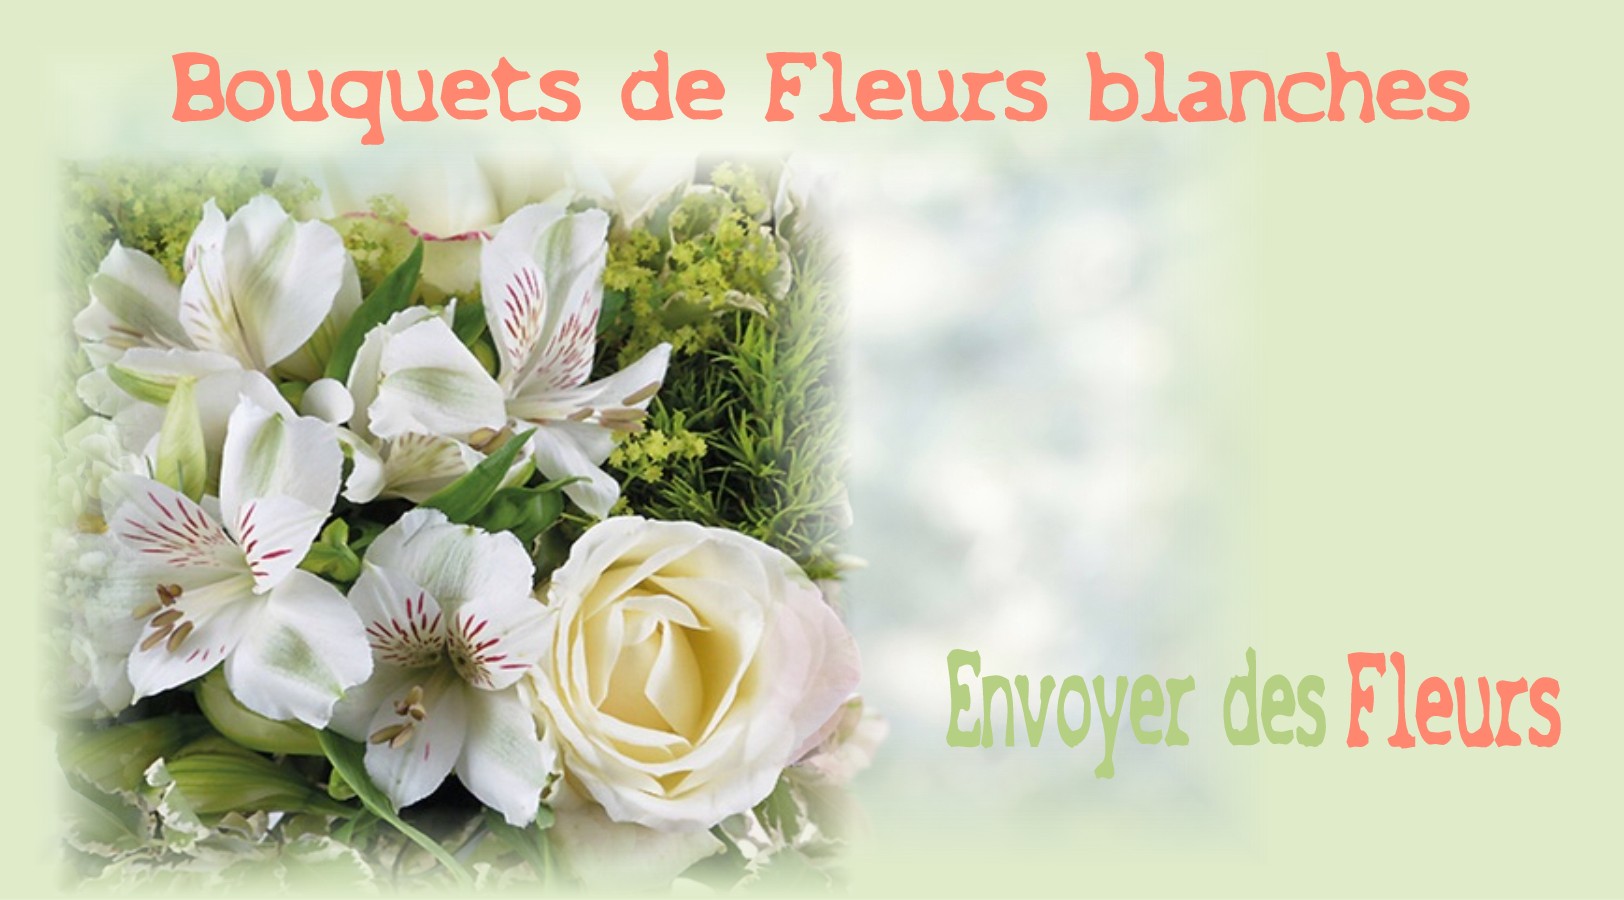 BOUQUETS DE FLEURS BLANCHES -FLEURISTE de l'ARIÈGE - ENVOYER DES FLEURS